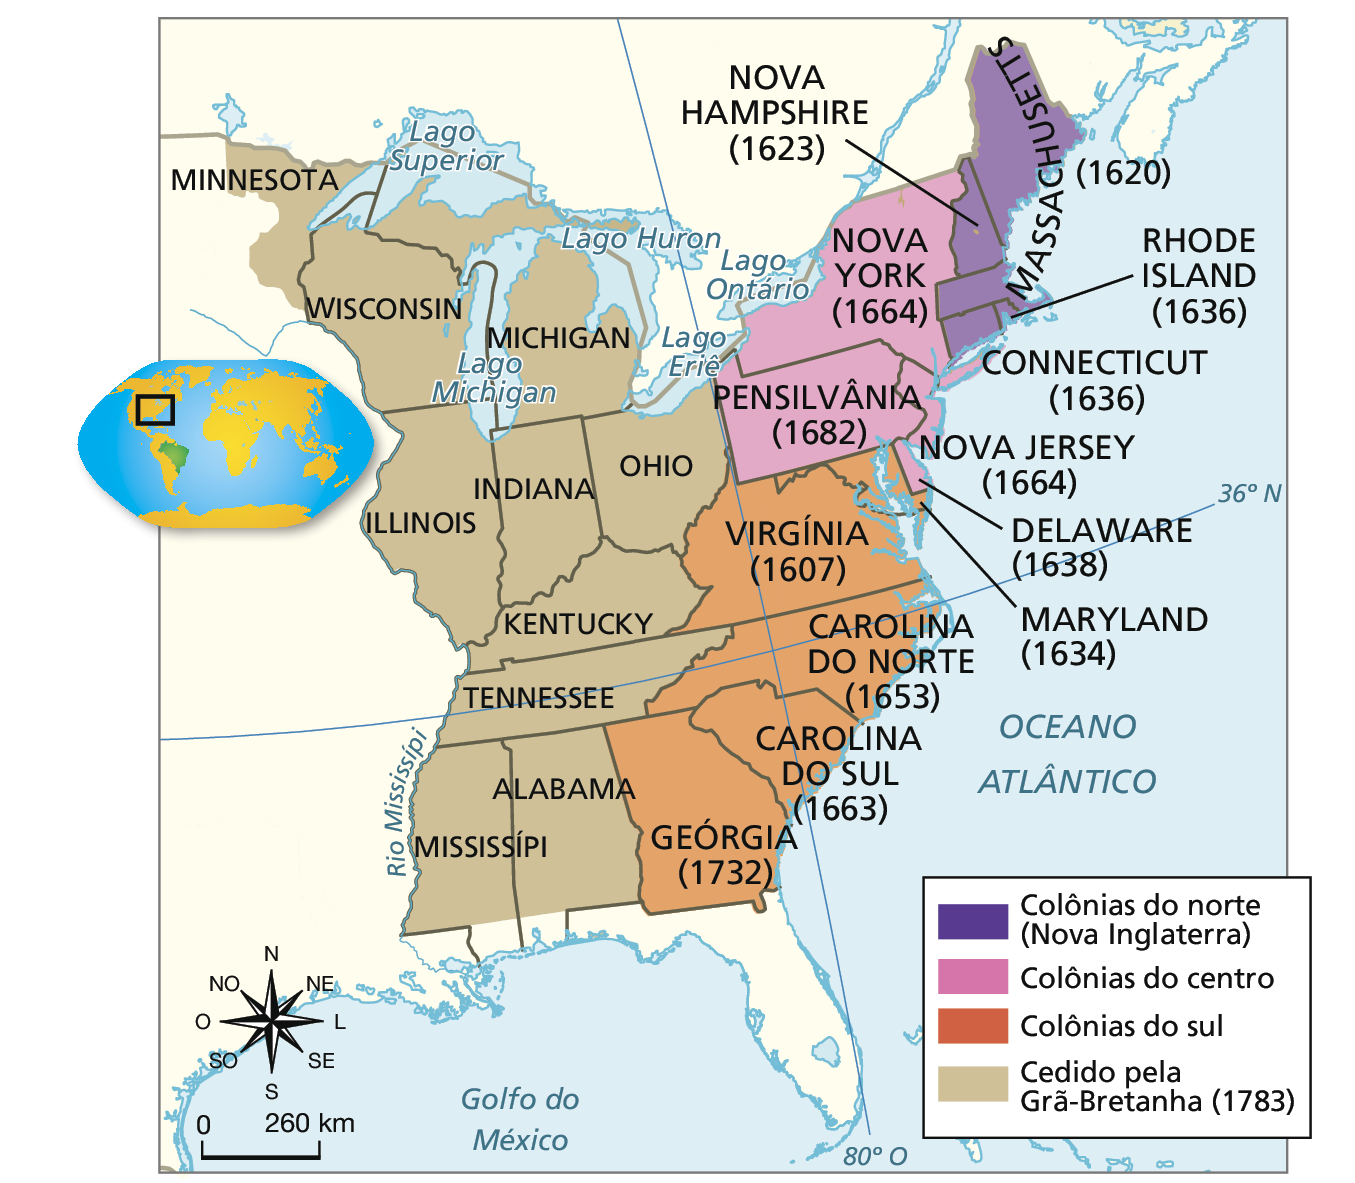 Mapa. As Treze Colônias e as terras conquistadas após o Tratado de Paris. Mapa representando as Treze Colônias na parte leste do território dos Estados Unidos. Legenda: Roxo: Colônias do norte (Nova Inglaterra). Rosa: Colônias do centro. Laranja: Colônias do sul. Bege: Cedido pela Grã-Bretanha (1783). No mapa, as colônias do norte (Nova Inglaterra) estão localizadas no extremo norte da costa leste, banhada pelo Oceano Atlântico: Nova Hampshire (1623); Massachusetts (1620); Rhode Island (1636); Connecticut (1636). As colônias do centro estão localizadas na porção centro-norte da costa leste, em direção ao interior: Nova York (1664); Pensilvânia (1682); Nova Jersey (1664); Delaware (1638). As colônias do sul estão localizadas na porção centro-sul da costa leste: Virgínia (1607); Carolina do Norte (1653); Carolina do Sul (1663); Geórgia (1732). Os territórios cedidos pela Grã-Bretanha (1783) estão localizados na porção interior, de norte a sul, delimitados à oeste pelo Rio Mississipi e a leste pelas colônias do centro e do sul: Minnesota, Wisconsin, Michigan, Ohio, Indiana, Illinois, Kentucky, Tennessee, Alabama, Mississípi. No canto inferior esquerdo, rosa dos ventos e a escala de 0 a 260 quilômetros.